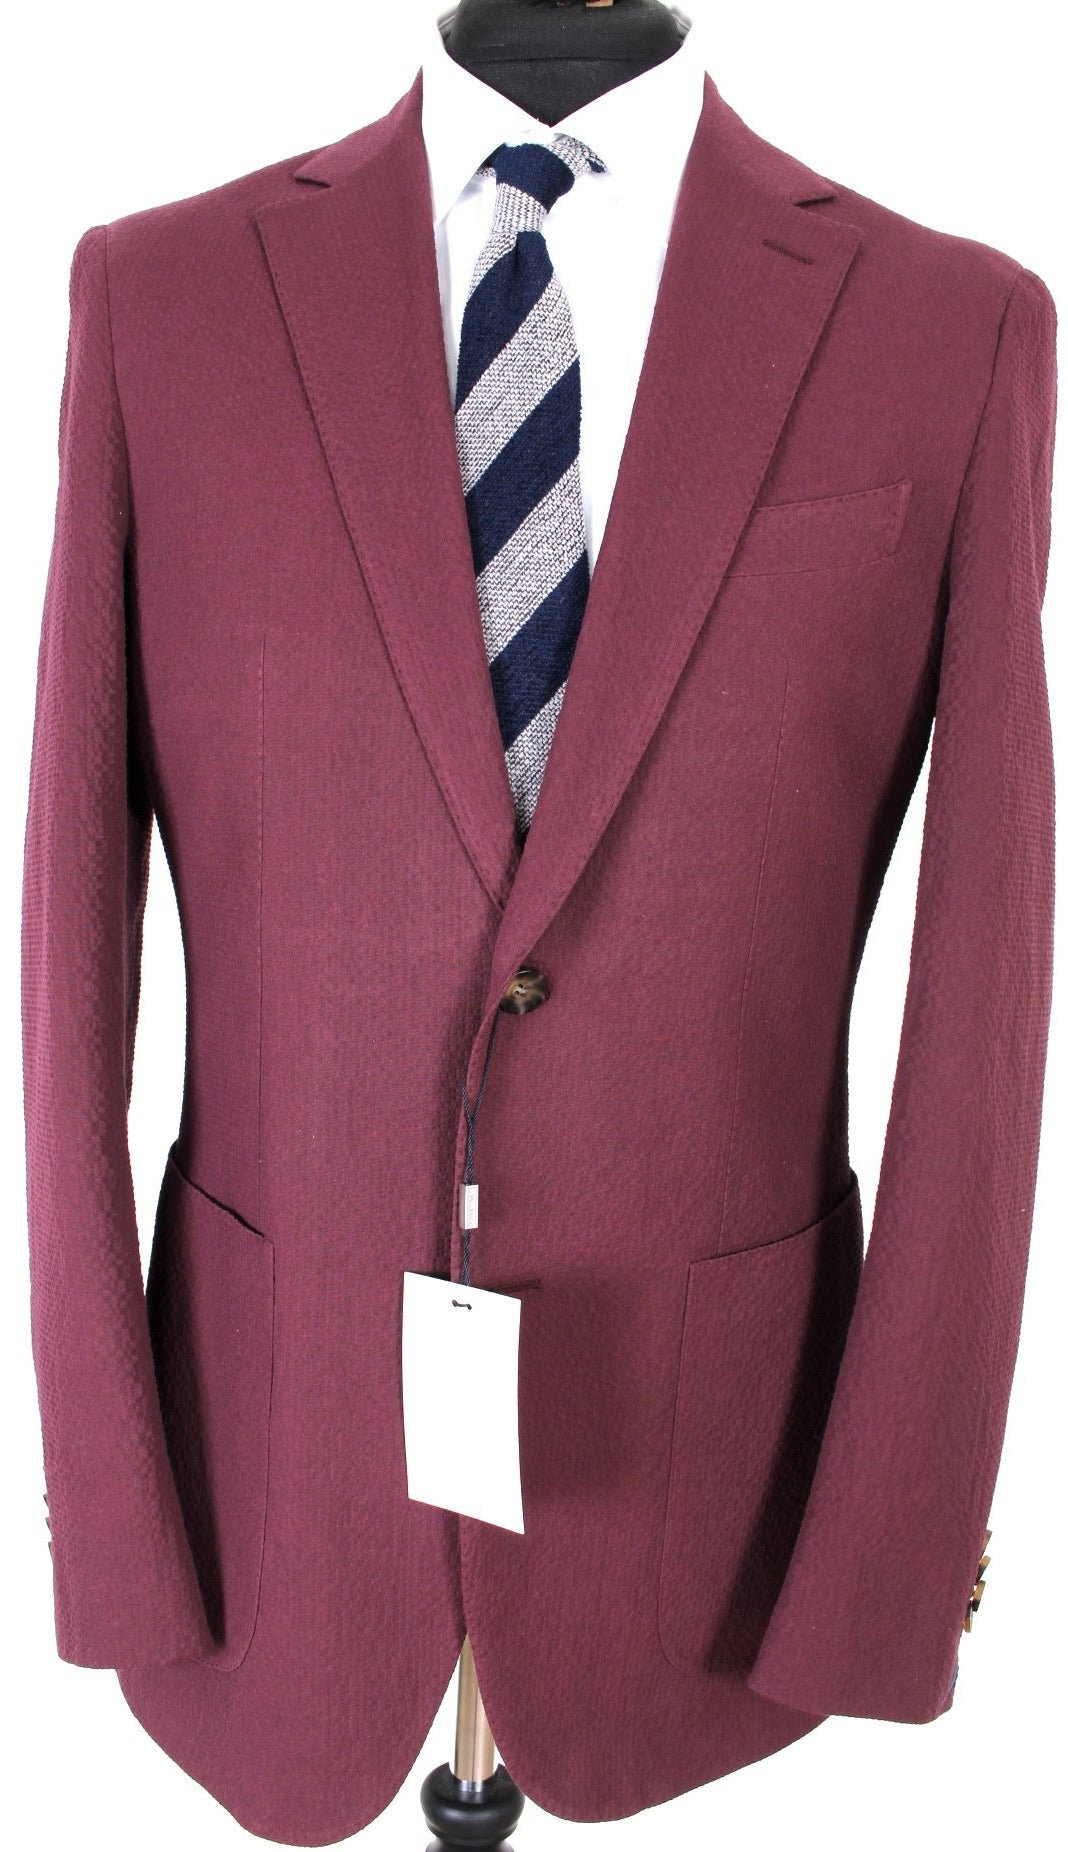 NWT Suitsupply Havana Burgundy 100% Cotton Seersucker Suit - Size 40S